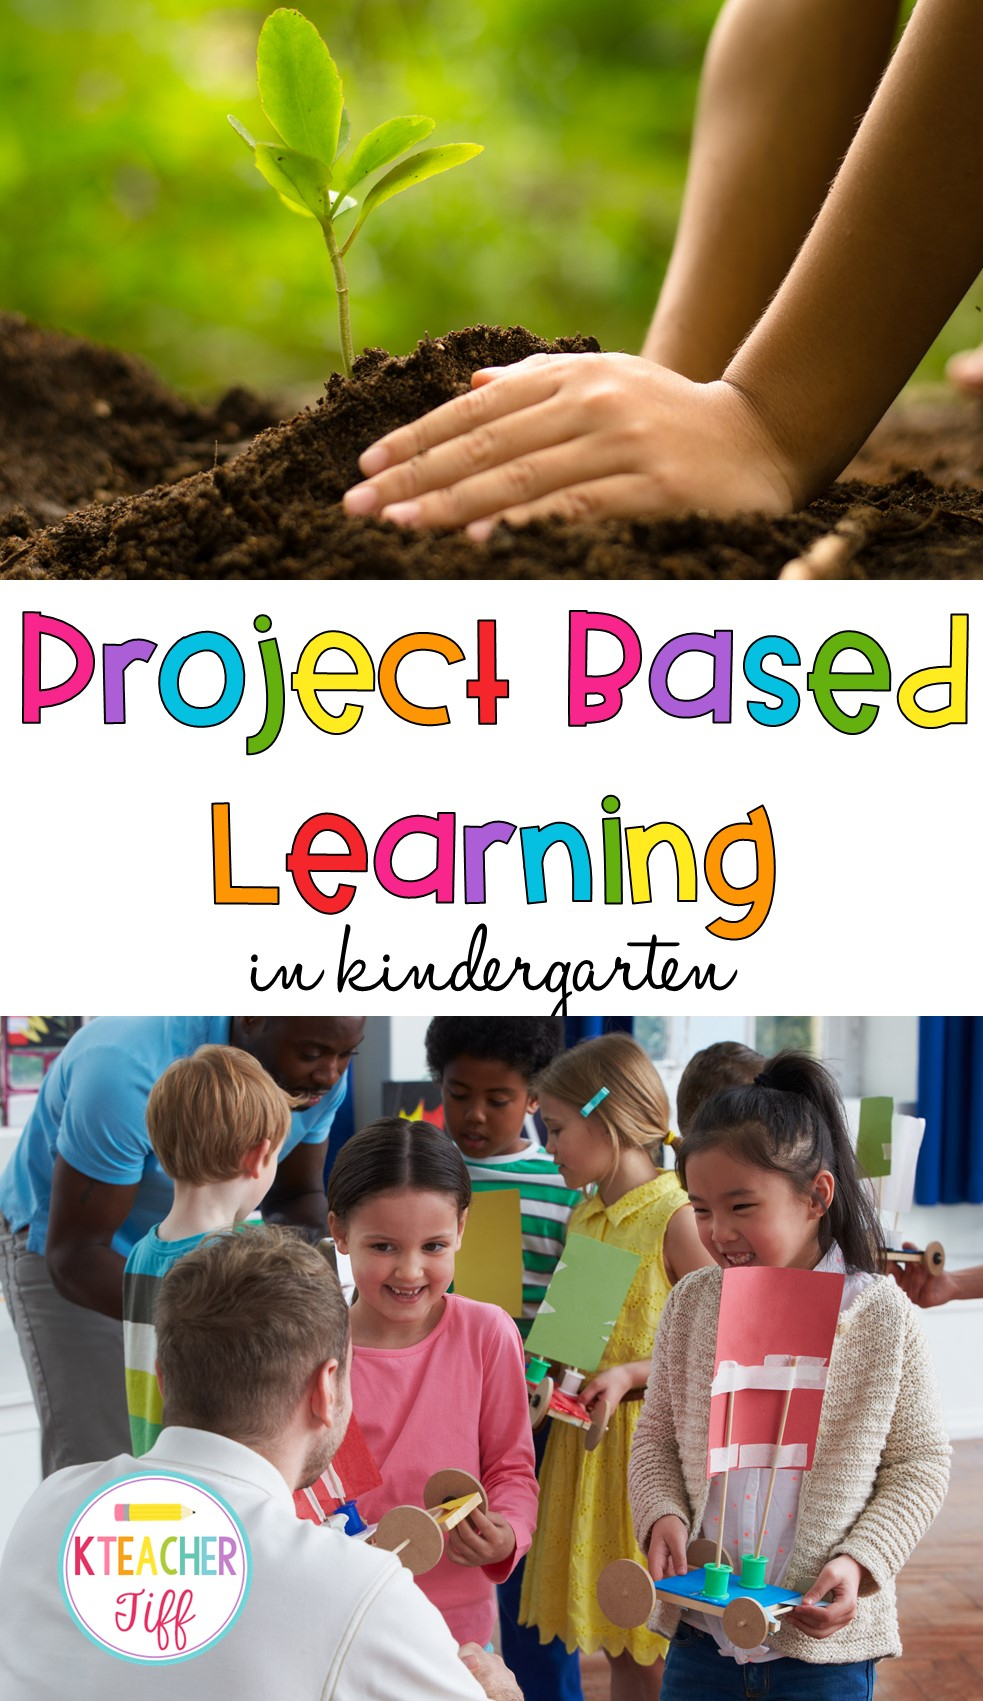 Project Based Learning In Kindergarten - Kteachertiff